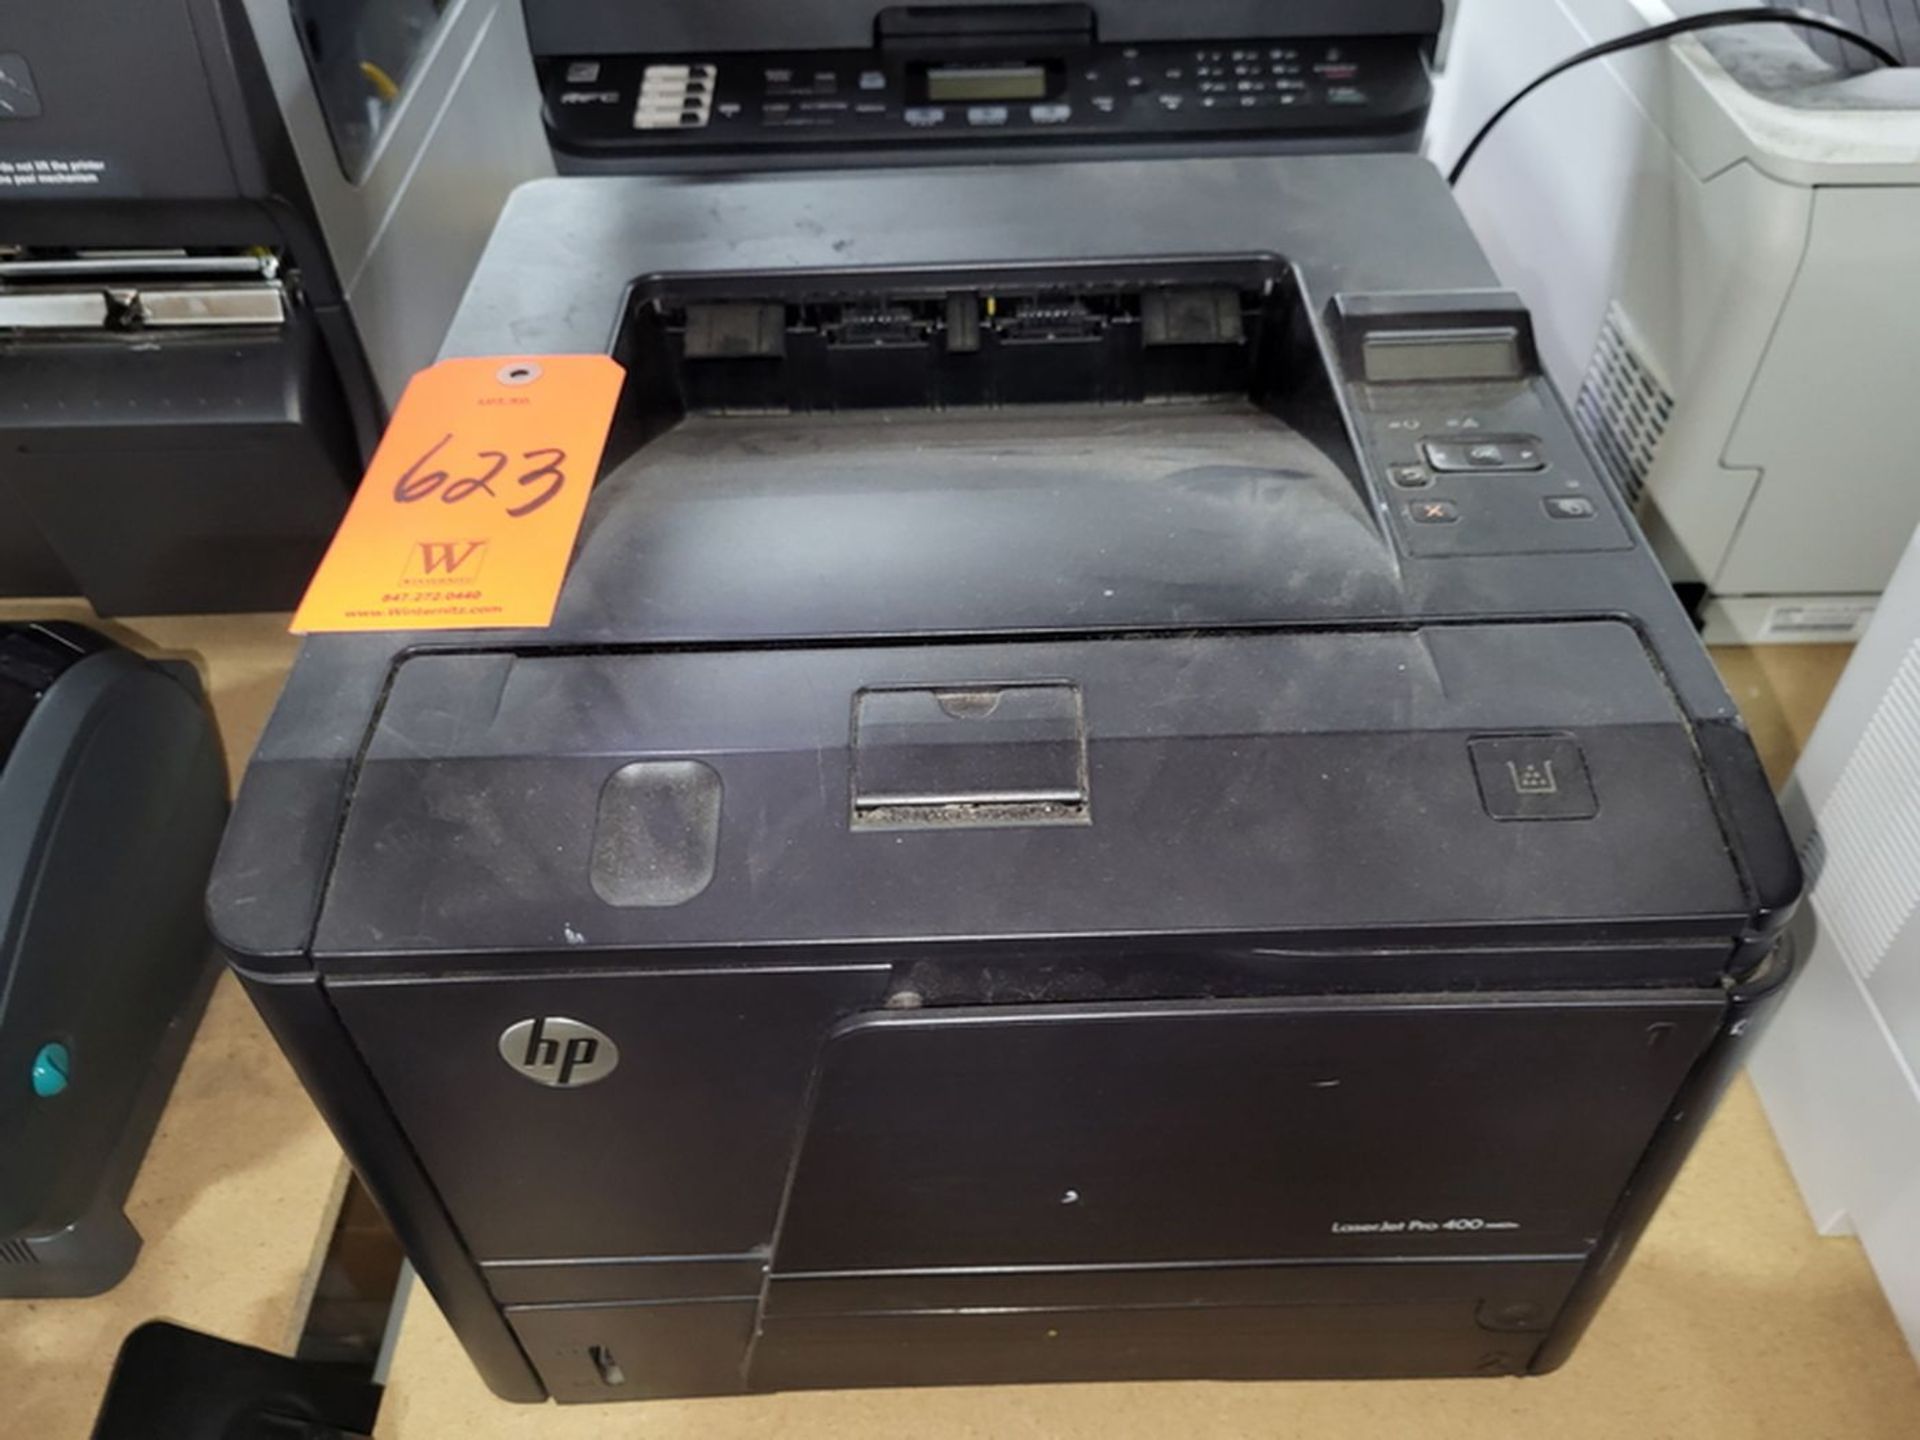 HP LaserJet Pro 400 M401n Laser Printer;